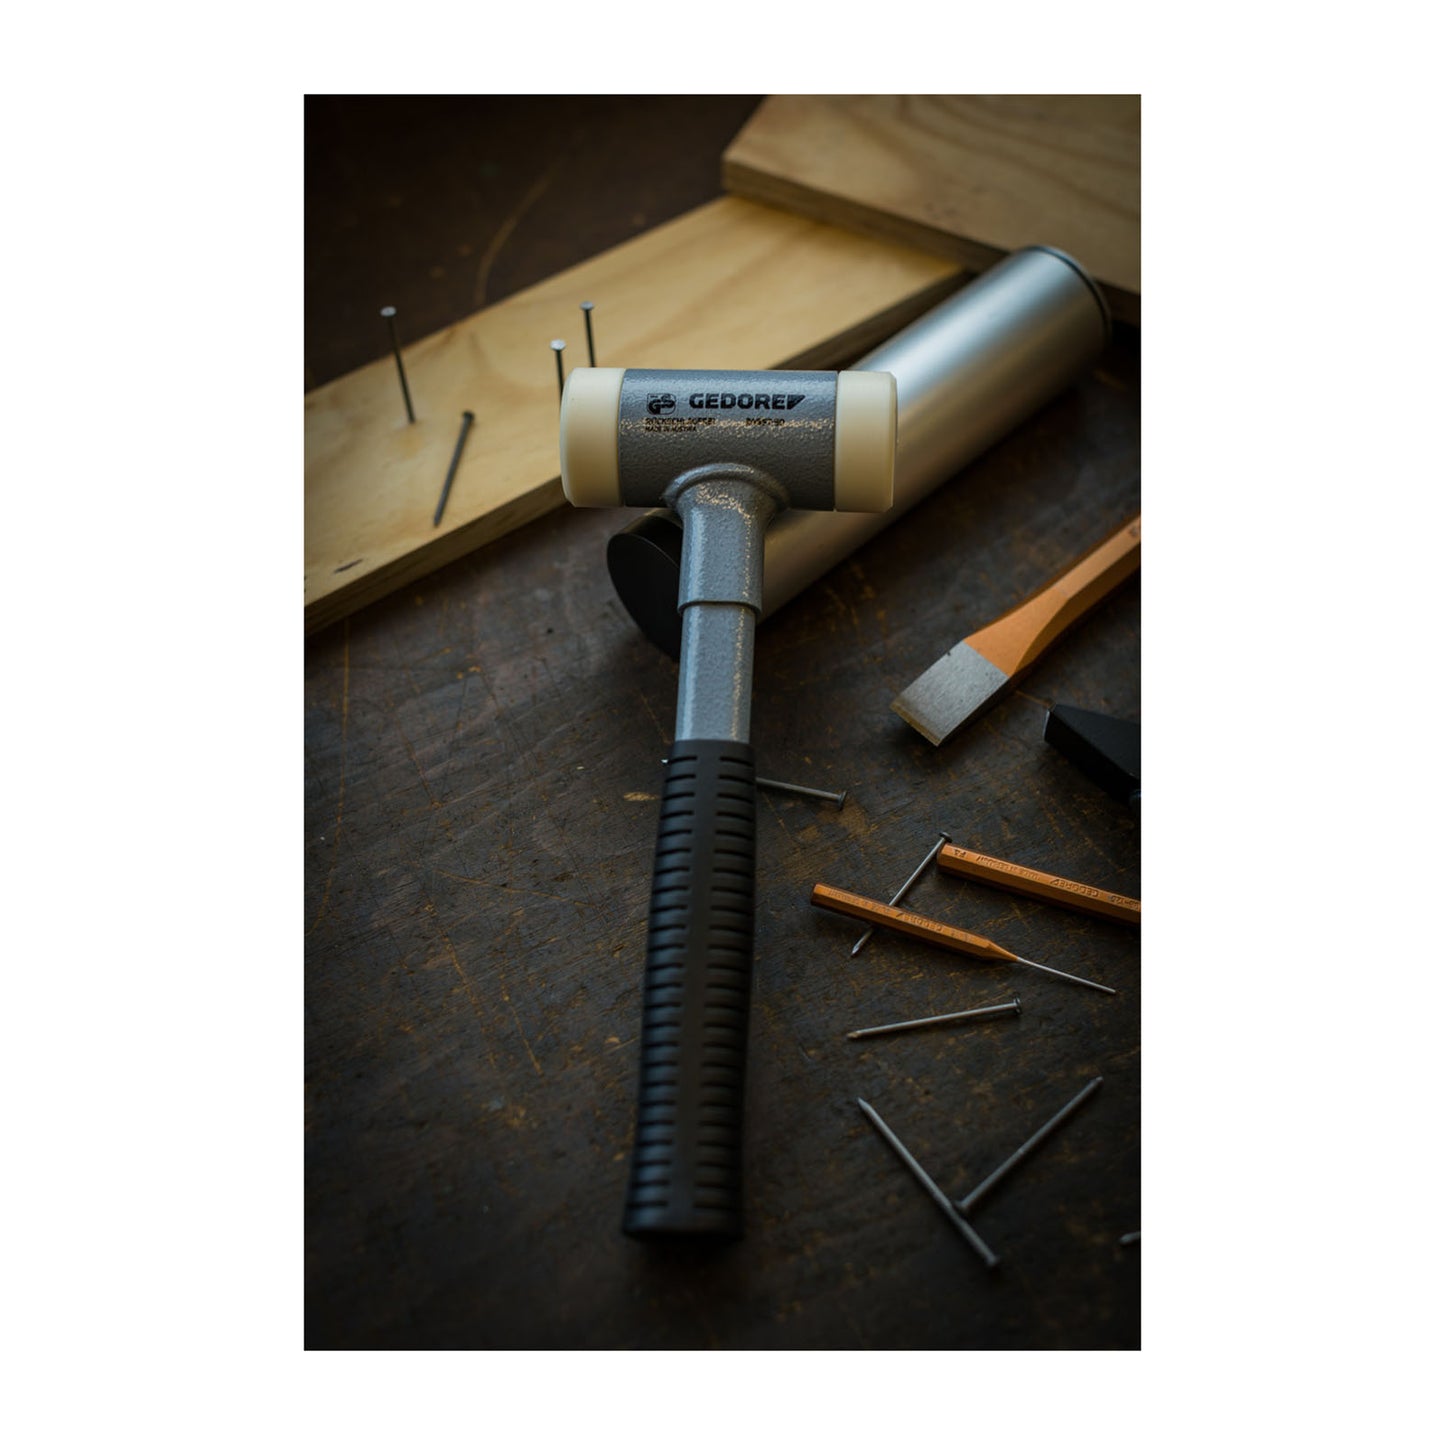 GEDORE 248 ST-30 - Anti-rebound hammer 30 mm (8828950)